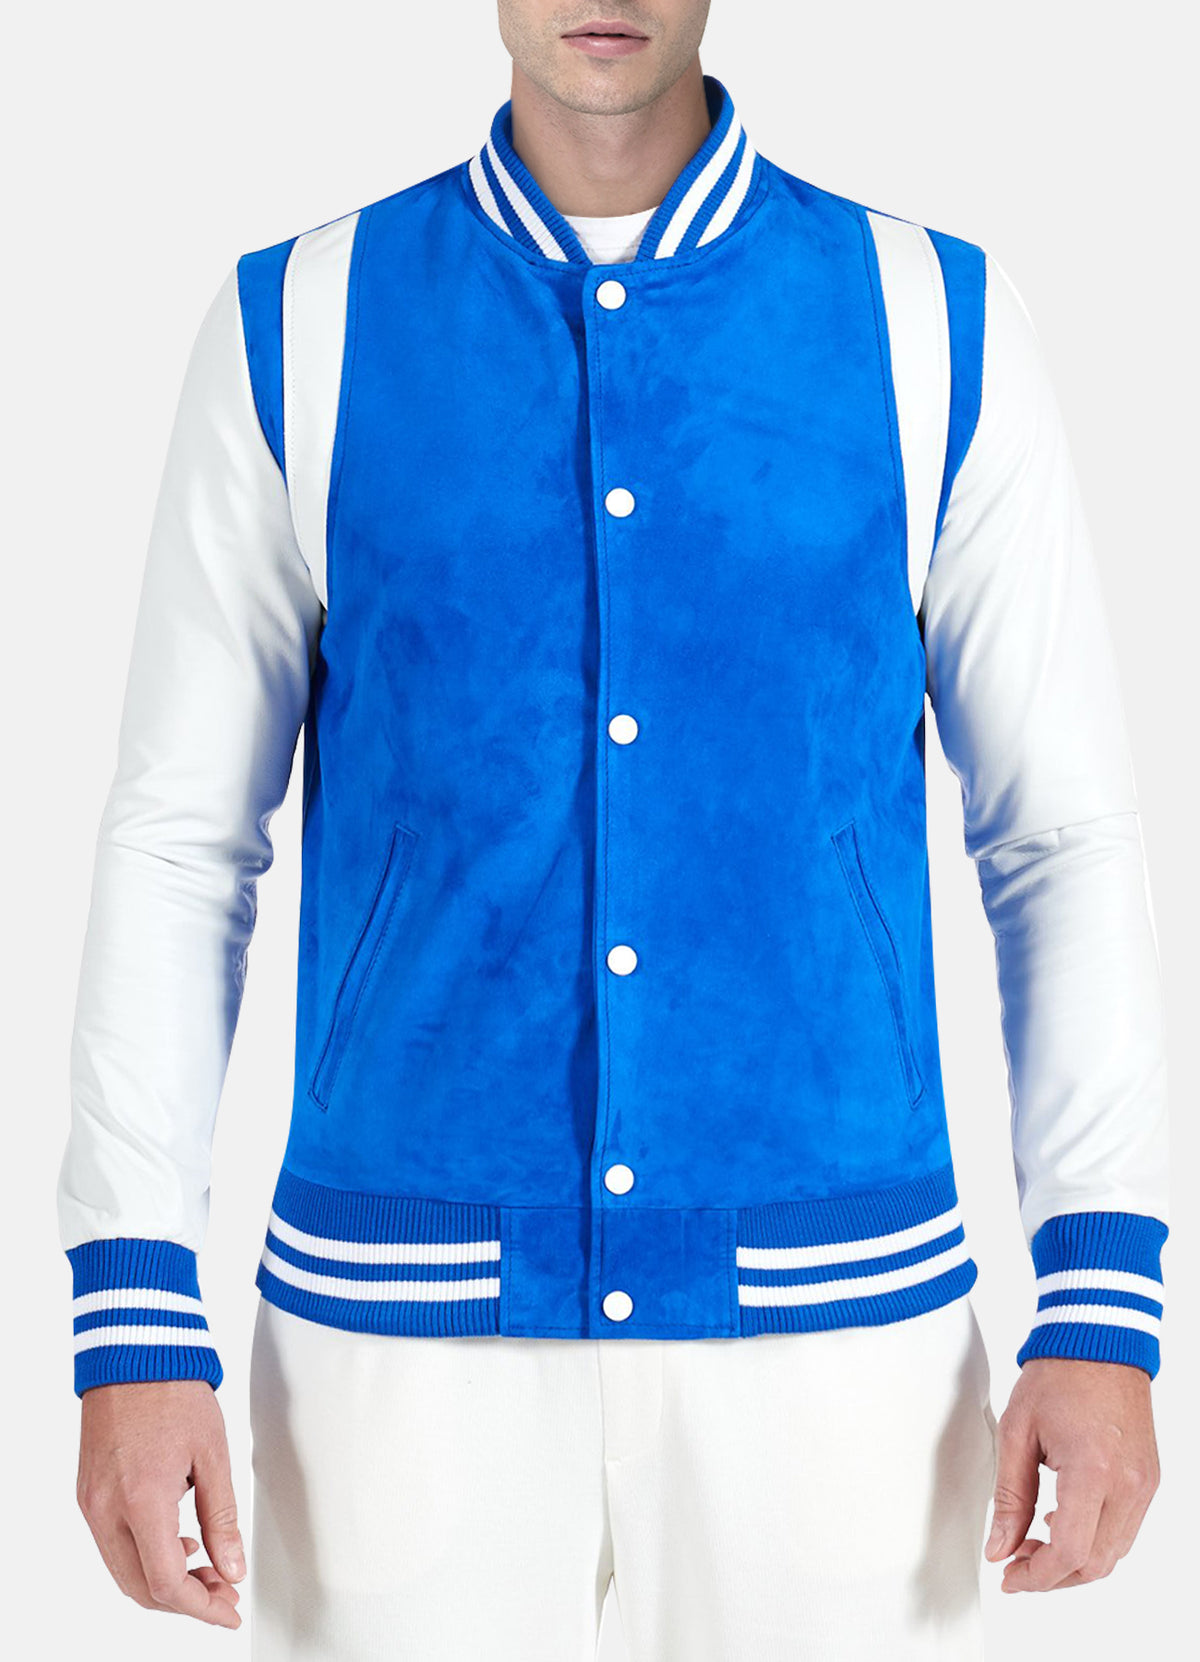 Mens Blue and White Varsity Jacket | Get Free Shipping! – Elite Jacket